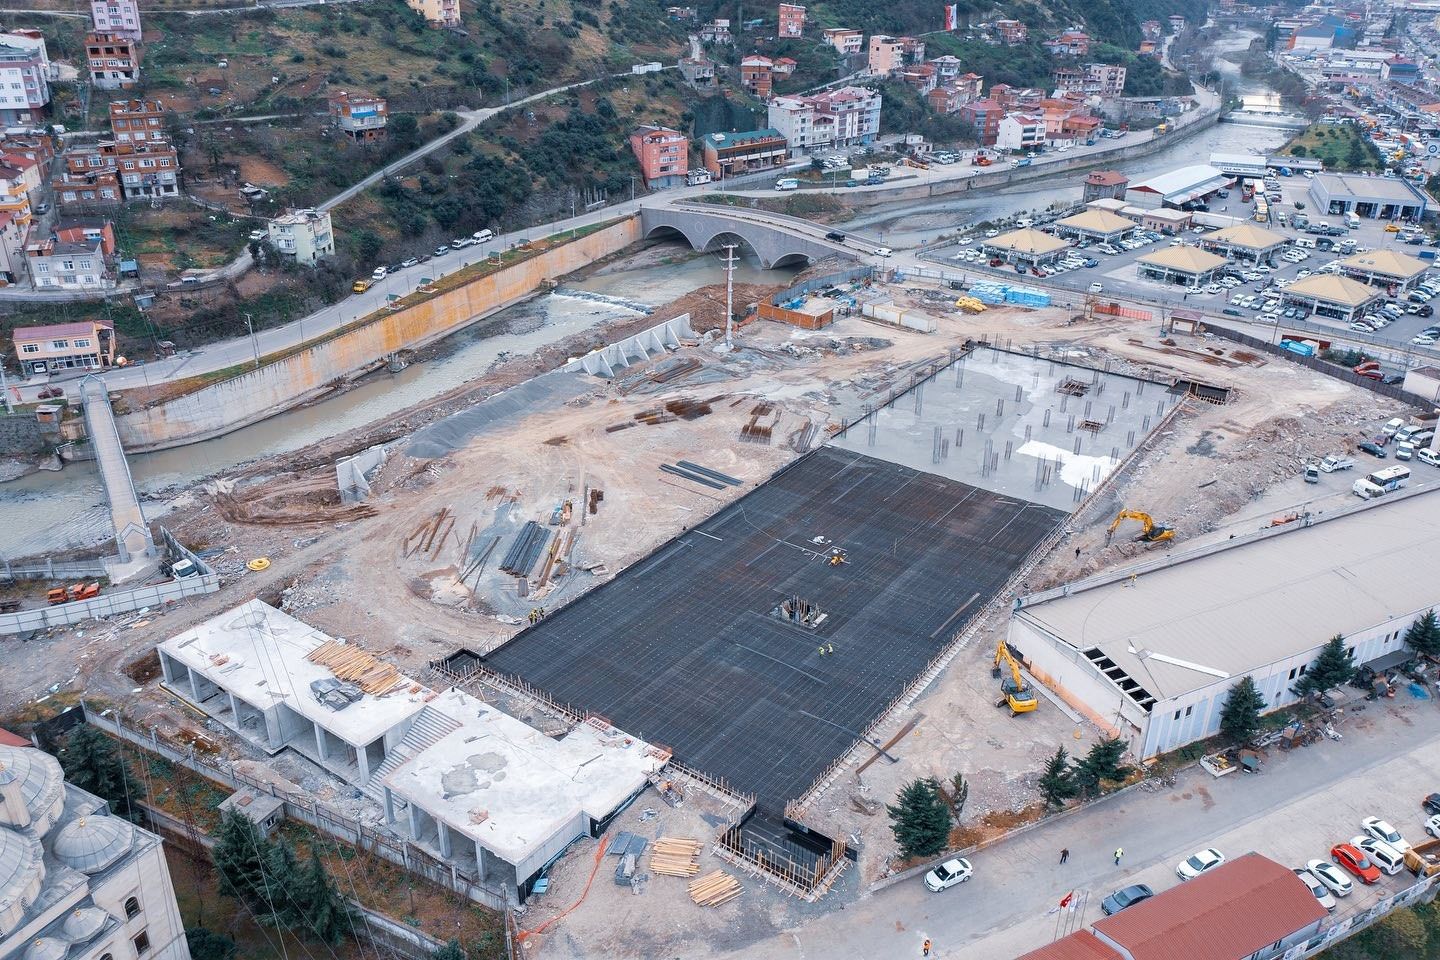 Trabzon’un yeni otogar inşaatı hızla yükseliyor